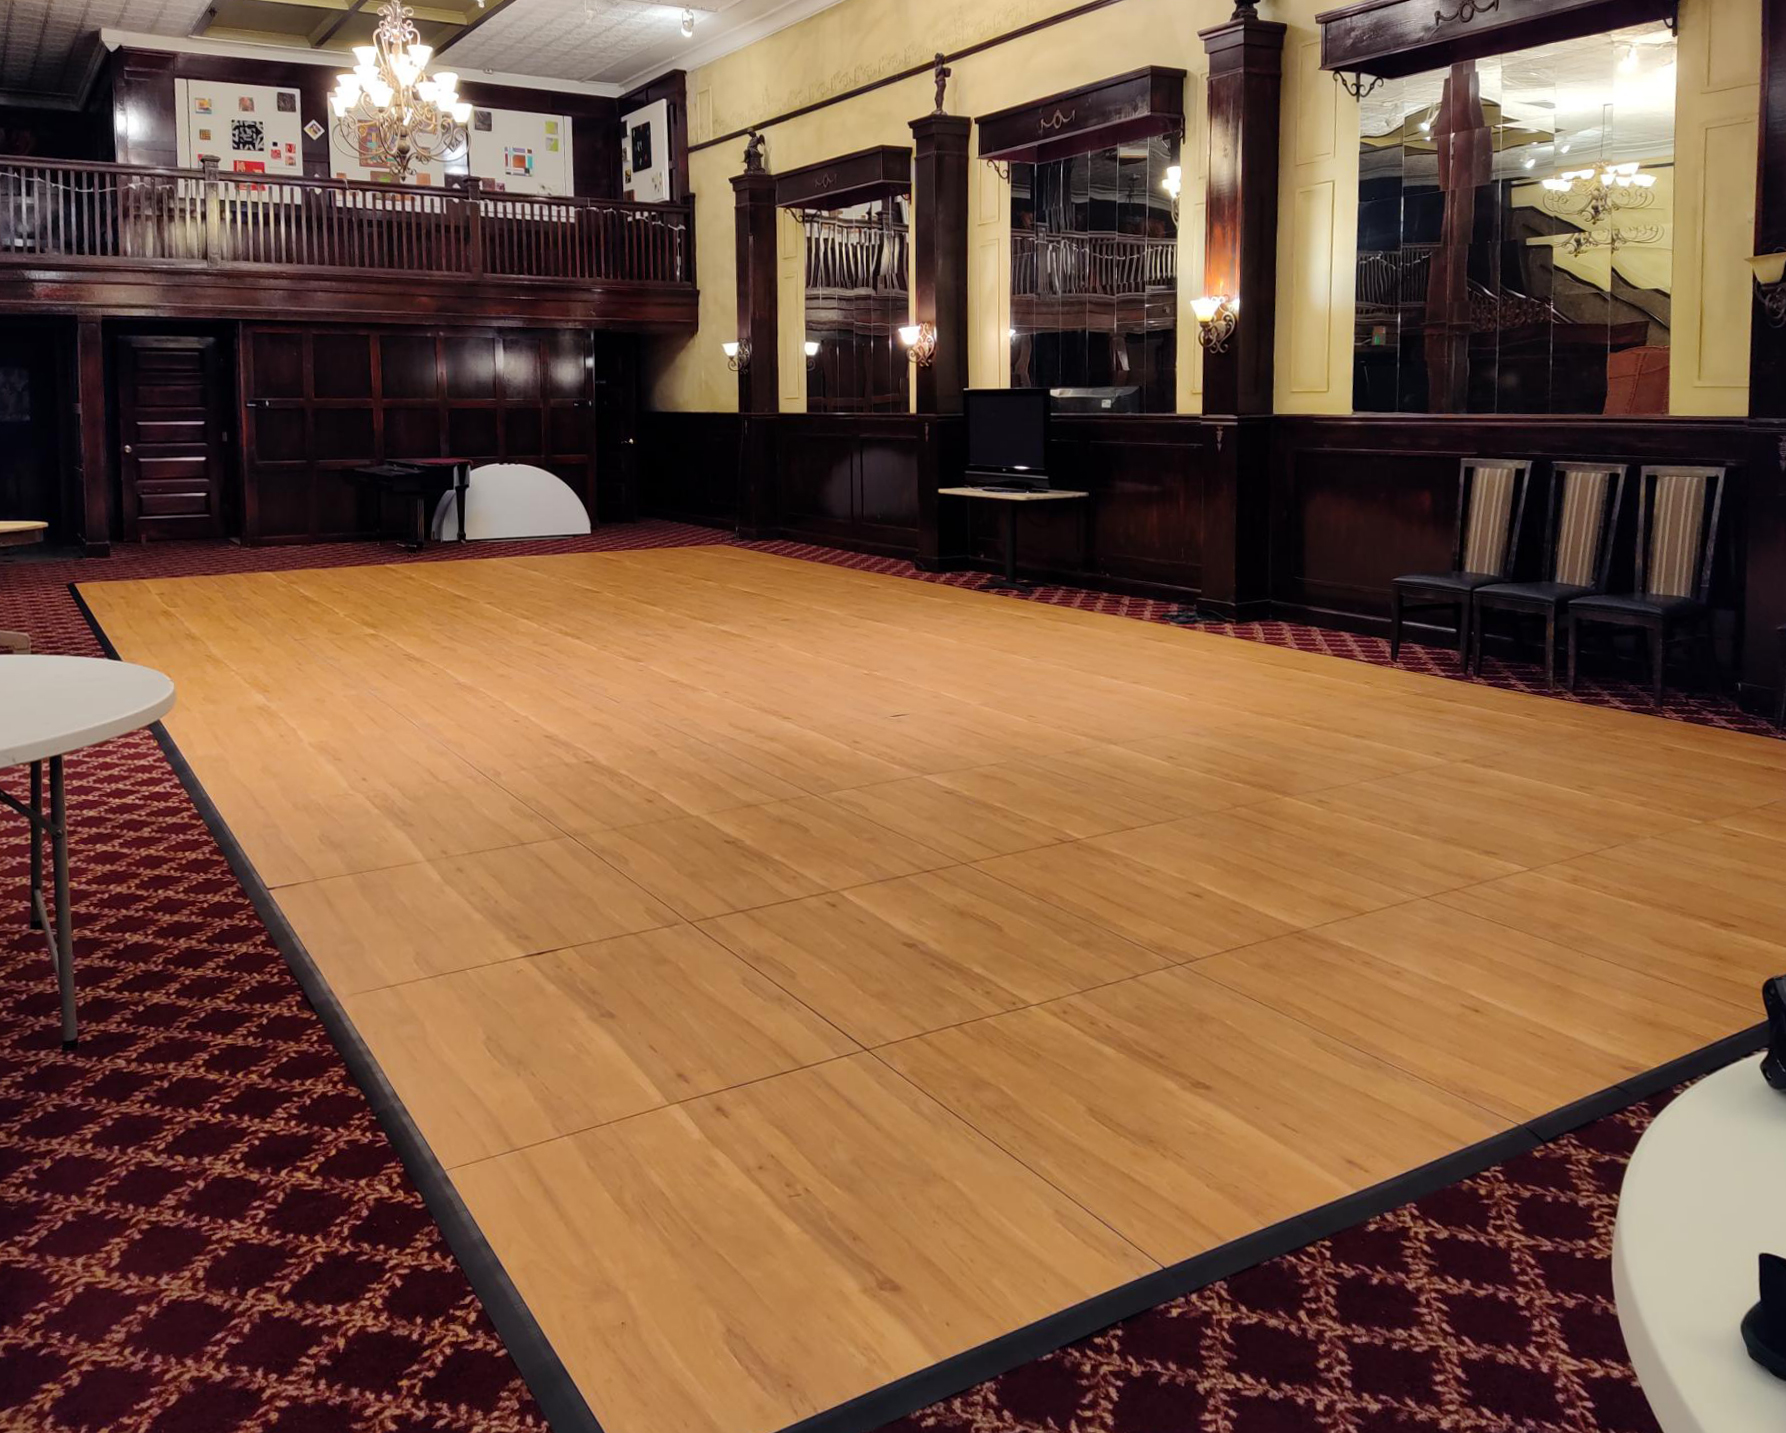 Maple plus rectangular dance floor with edges